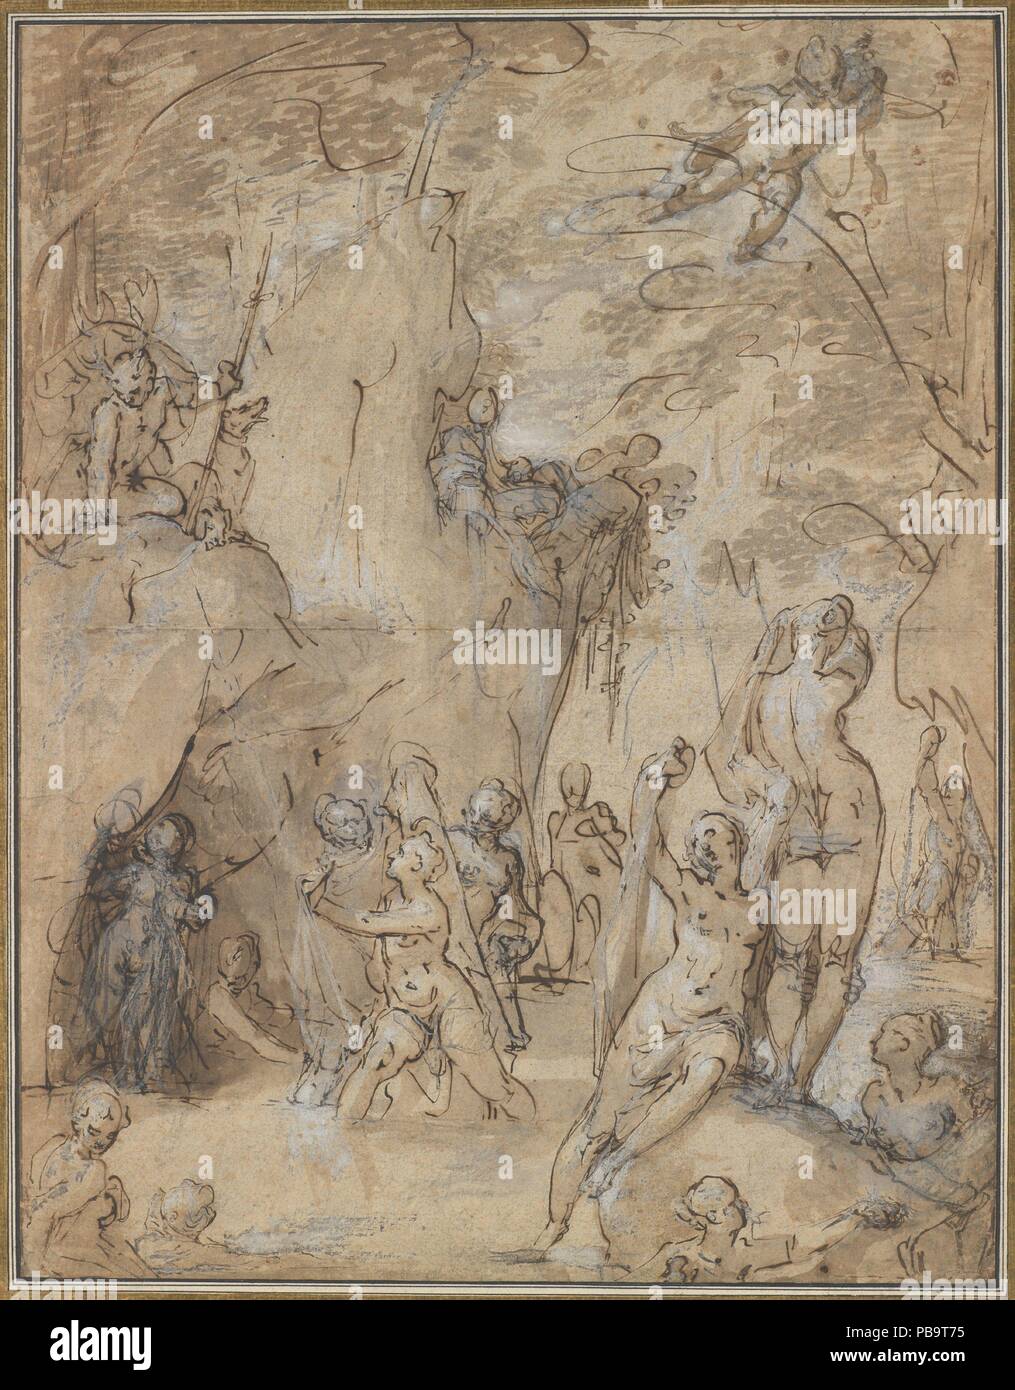 Diane et Actéon. Artiste : Bartholomeus Spranger (Anvers 1546-1611 Russisch, Prague). Dimensions : 16 1/4 x 12 5/8 in. (41.3 x 32.1cm). Date : ca. 1580-1585. Ce dessin représente l'histoire de Diane et Actéon, comme dit dans d'Ovide (Livre III : 138-253). Perché au sommet d'un affleurement rocheux en haut à gauche, Actéon regarde vers le bas sur Diana, qui est de se baigner dans l'entreprise de nymphes à l'intérieur d'un cadre arboré. Comme les baigneuses tentent de se couvrir, à l'eau éclabousse Diana l'intrus, qui se transforme en un cerf comme punition. Bien que la fonction servie par le dessin que j'ai Banque D'Images